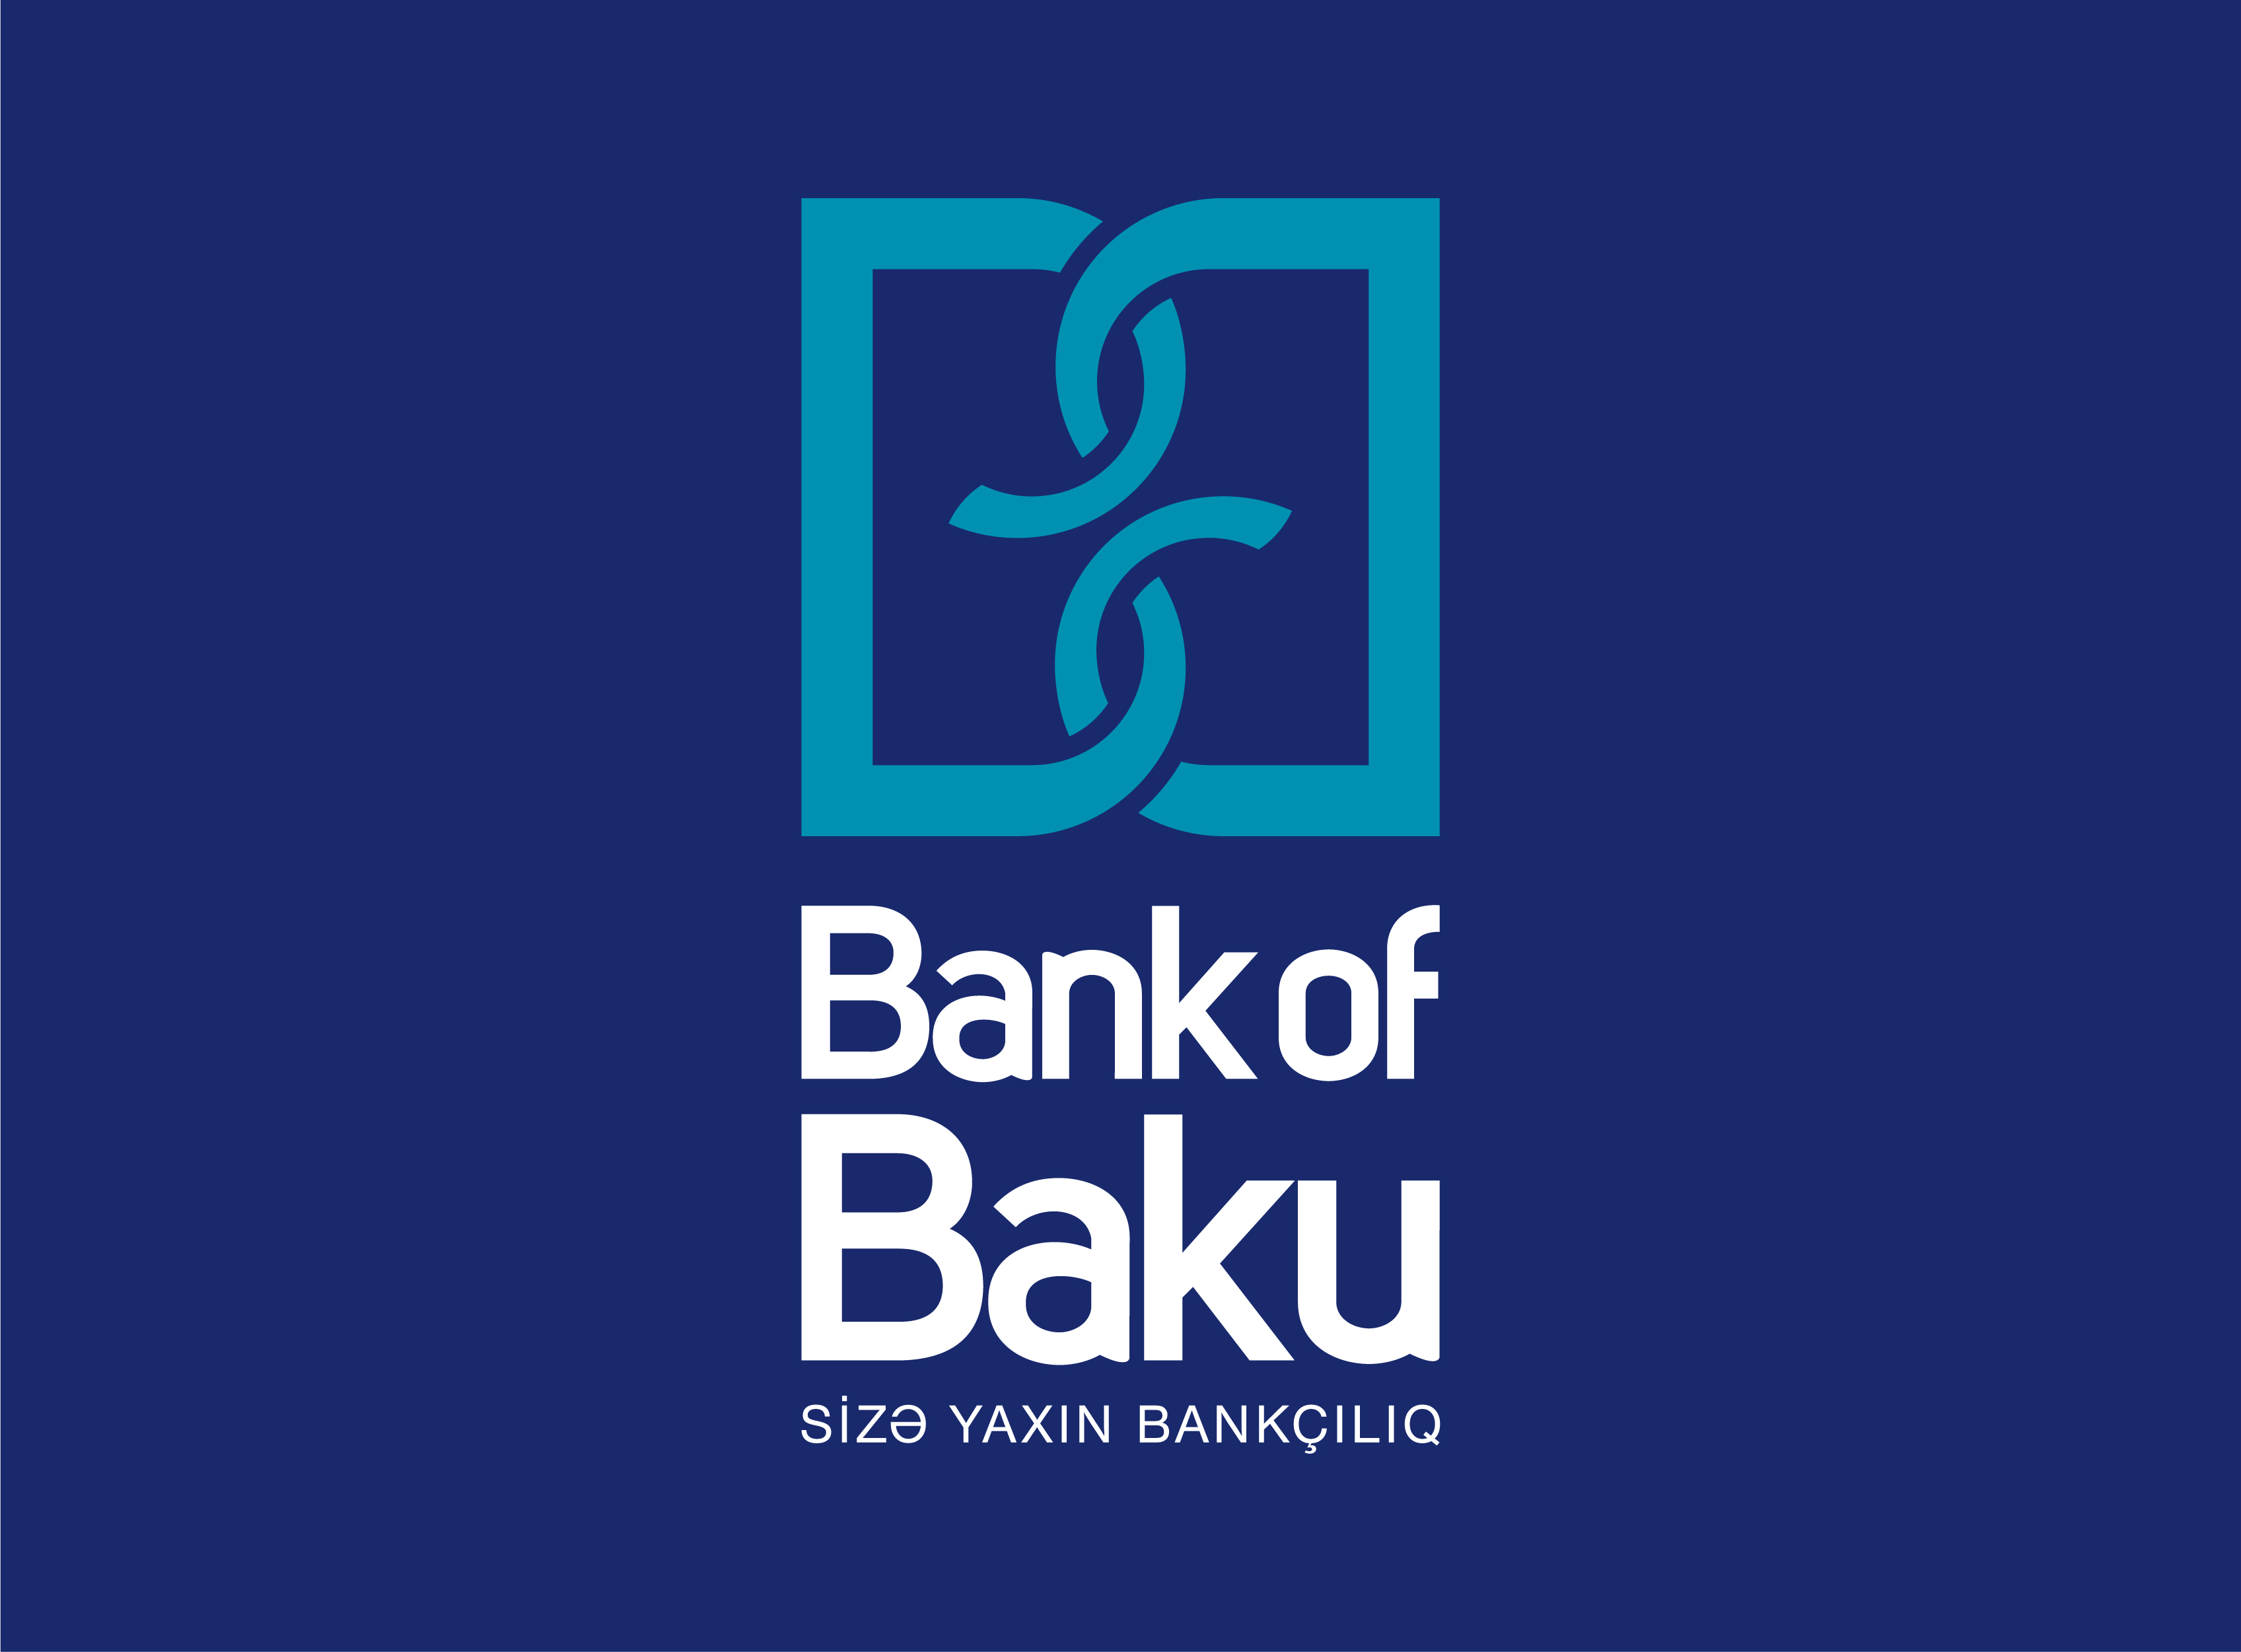 Bank of Baku Silahlı Qüvvələrə Yardım Fonduna 100.000 AZN köçürdü!